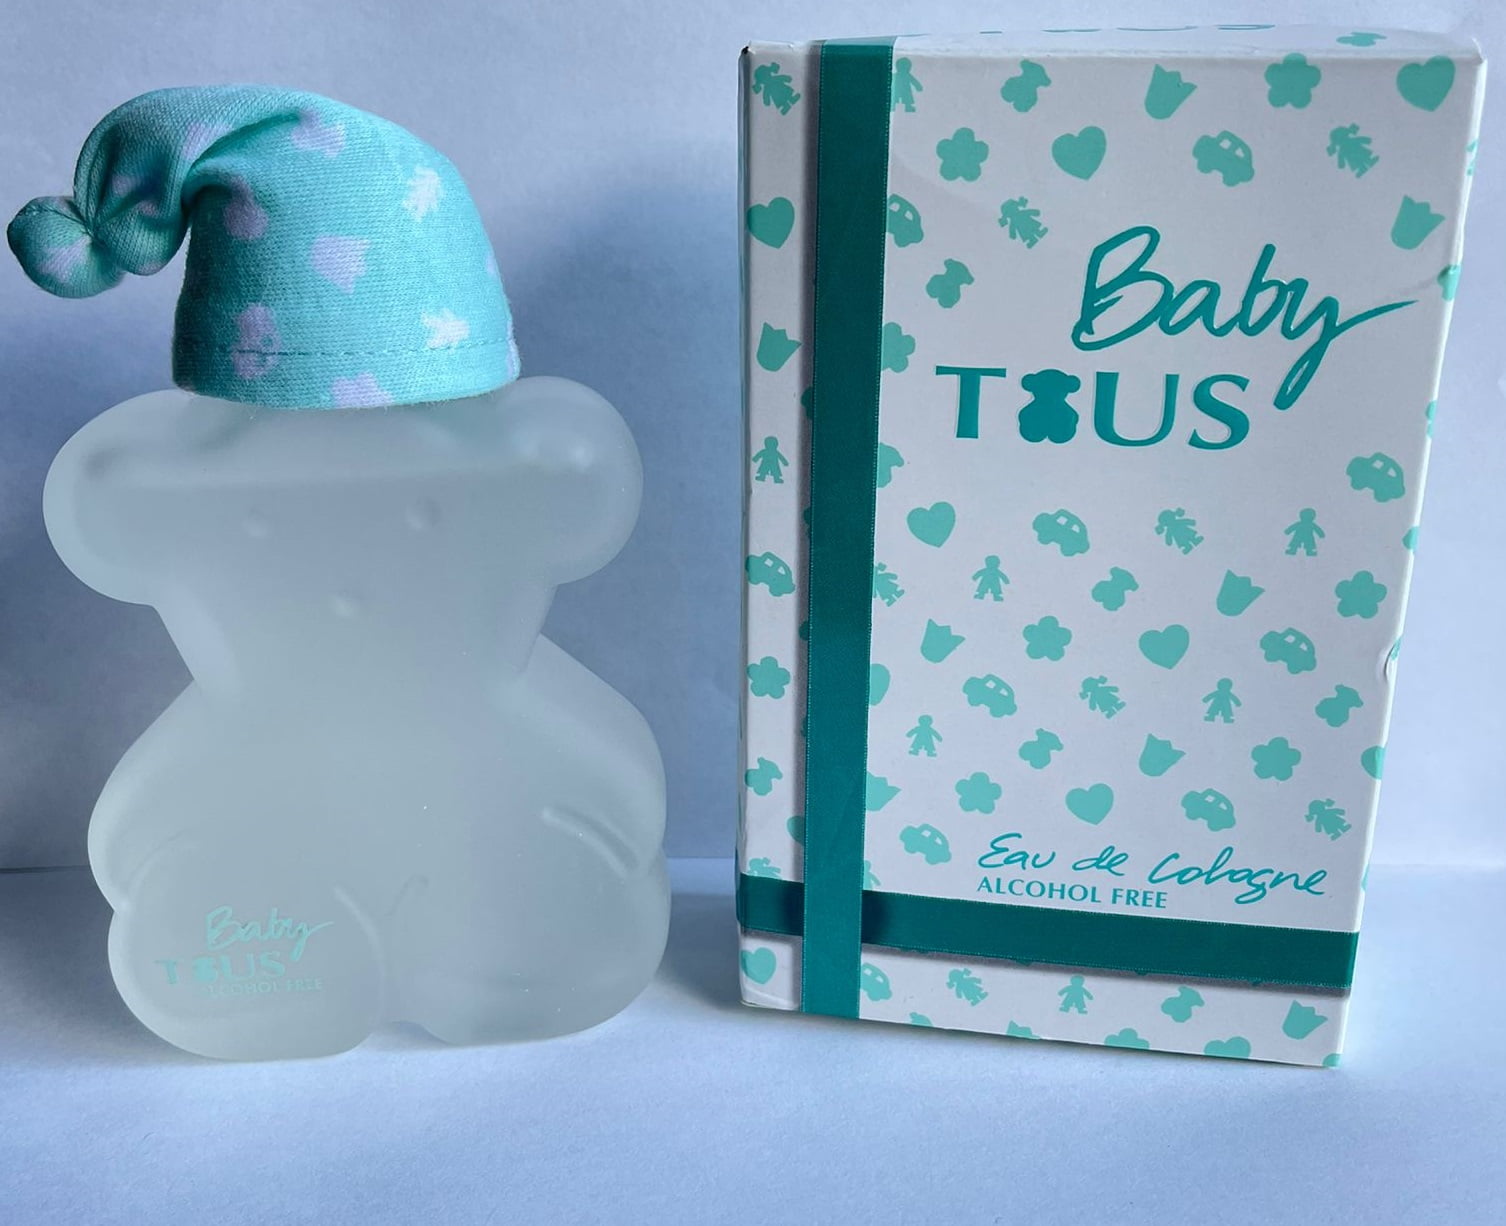 BABY TOUS by Tous 3.4 oz / 100 ml Eau De Cologne Women Perfume Spray Brand  New in Box